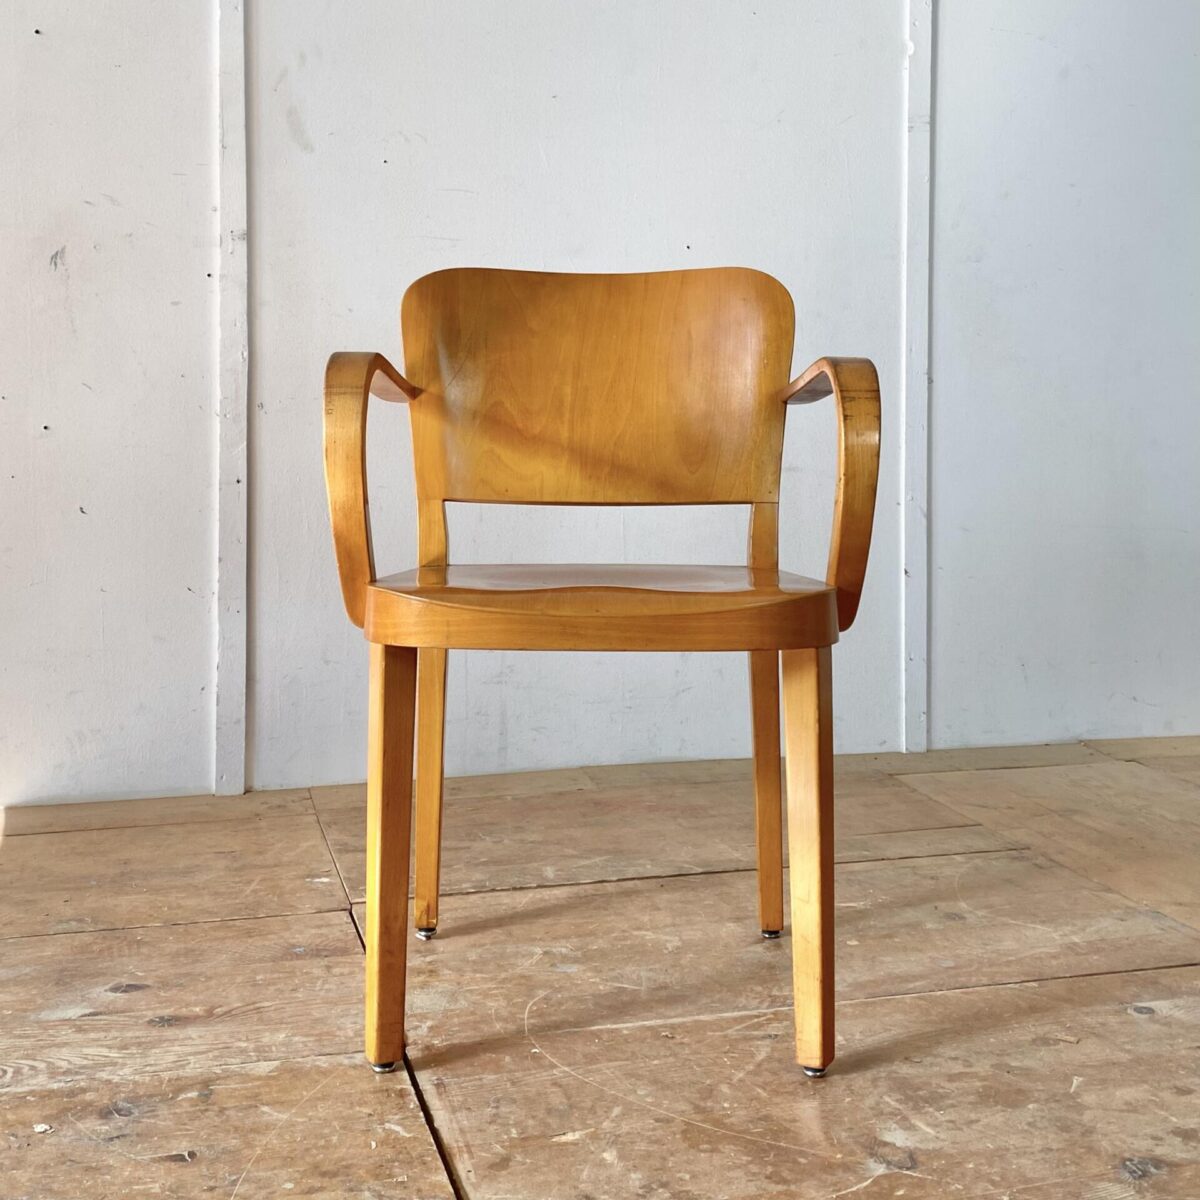 Deuxieme.shop Horgenglarus Armlehnstuhl von Max Ernst Haefeli, Modell Splendide aus den 30er Jahren. Der Stuhl ist in schönem stabilen Original Zustand. Sitzfläche und Lehne aus Birken Formsperrholz, Beine und Armlehnen Buche Vollholz, Dampfgebogen.